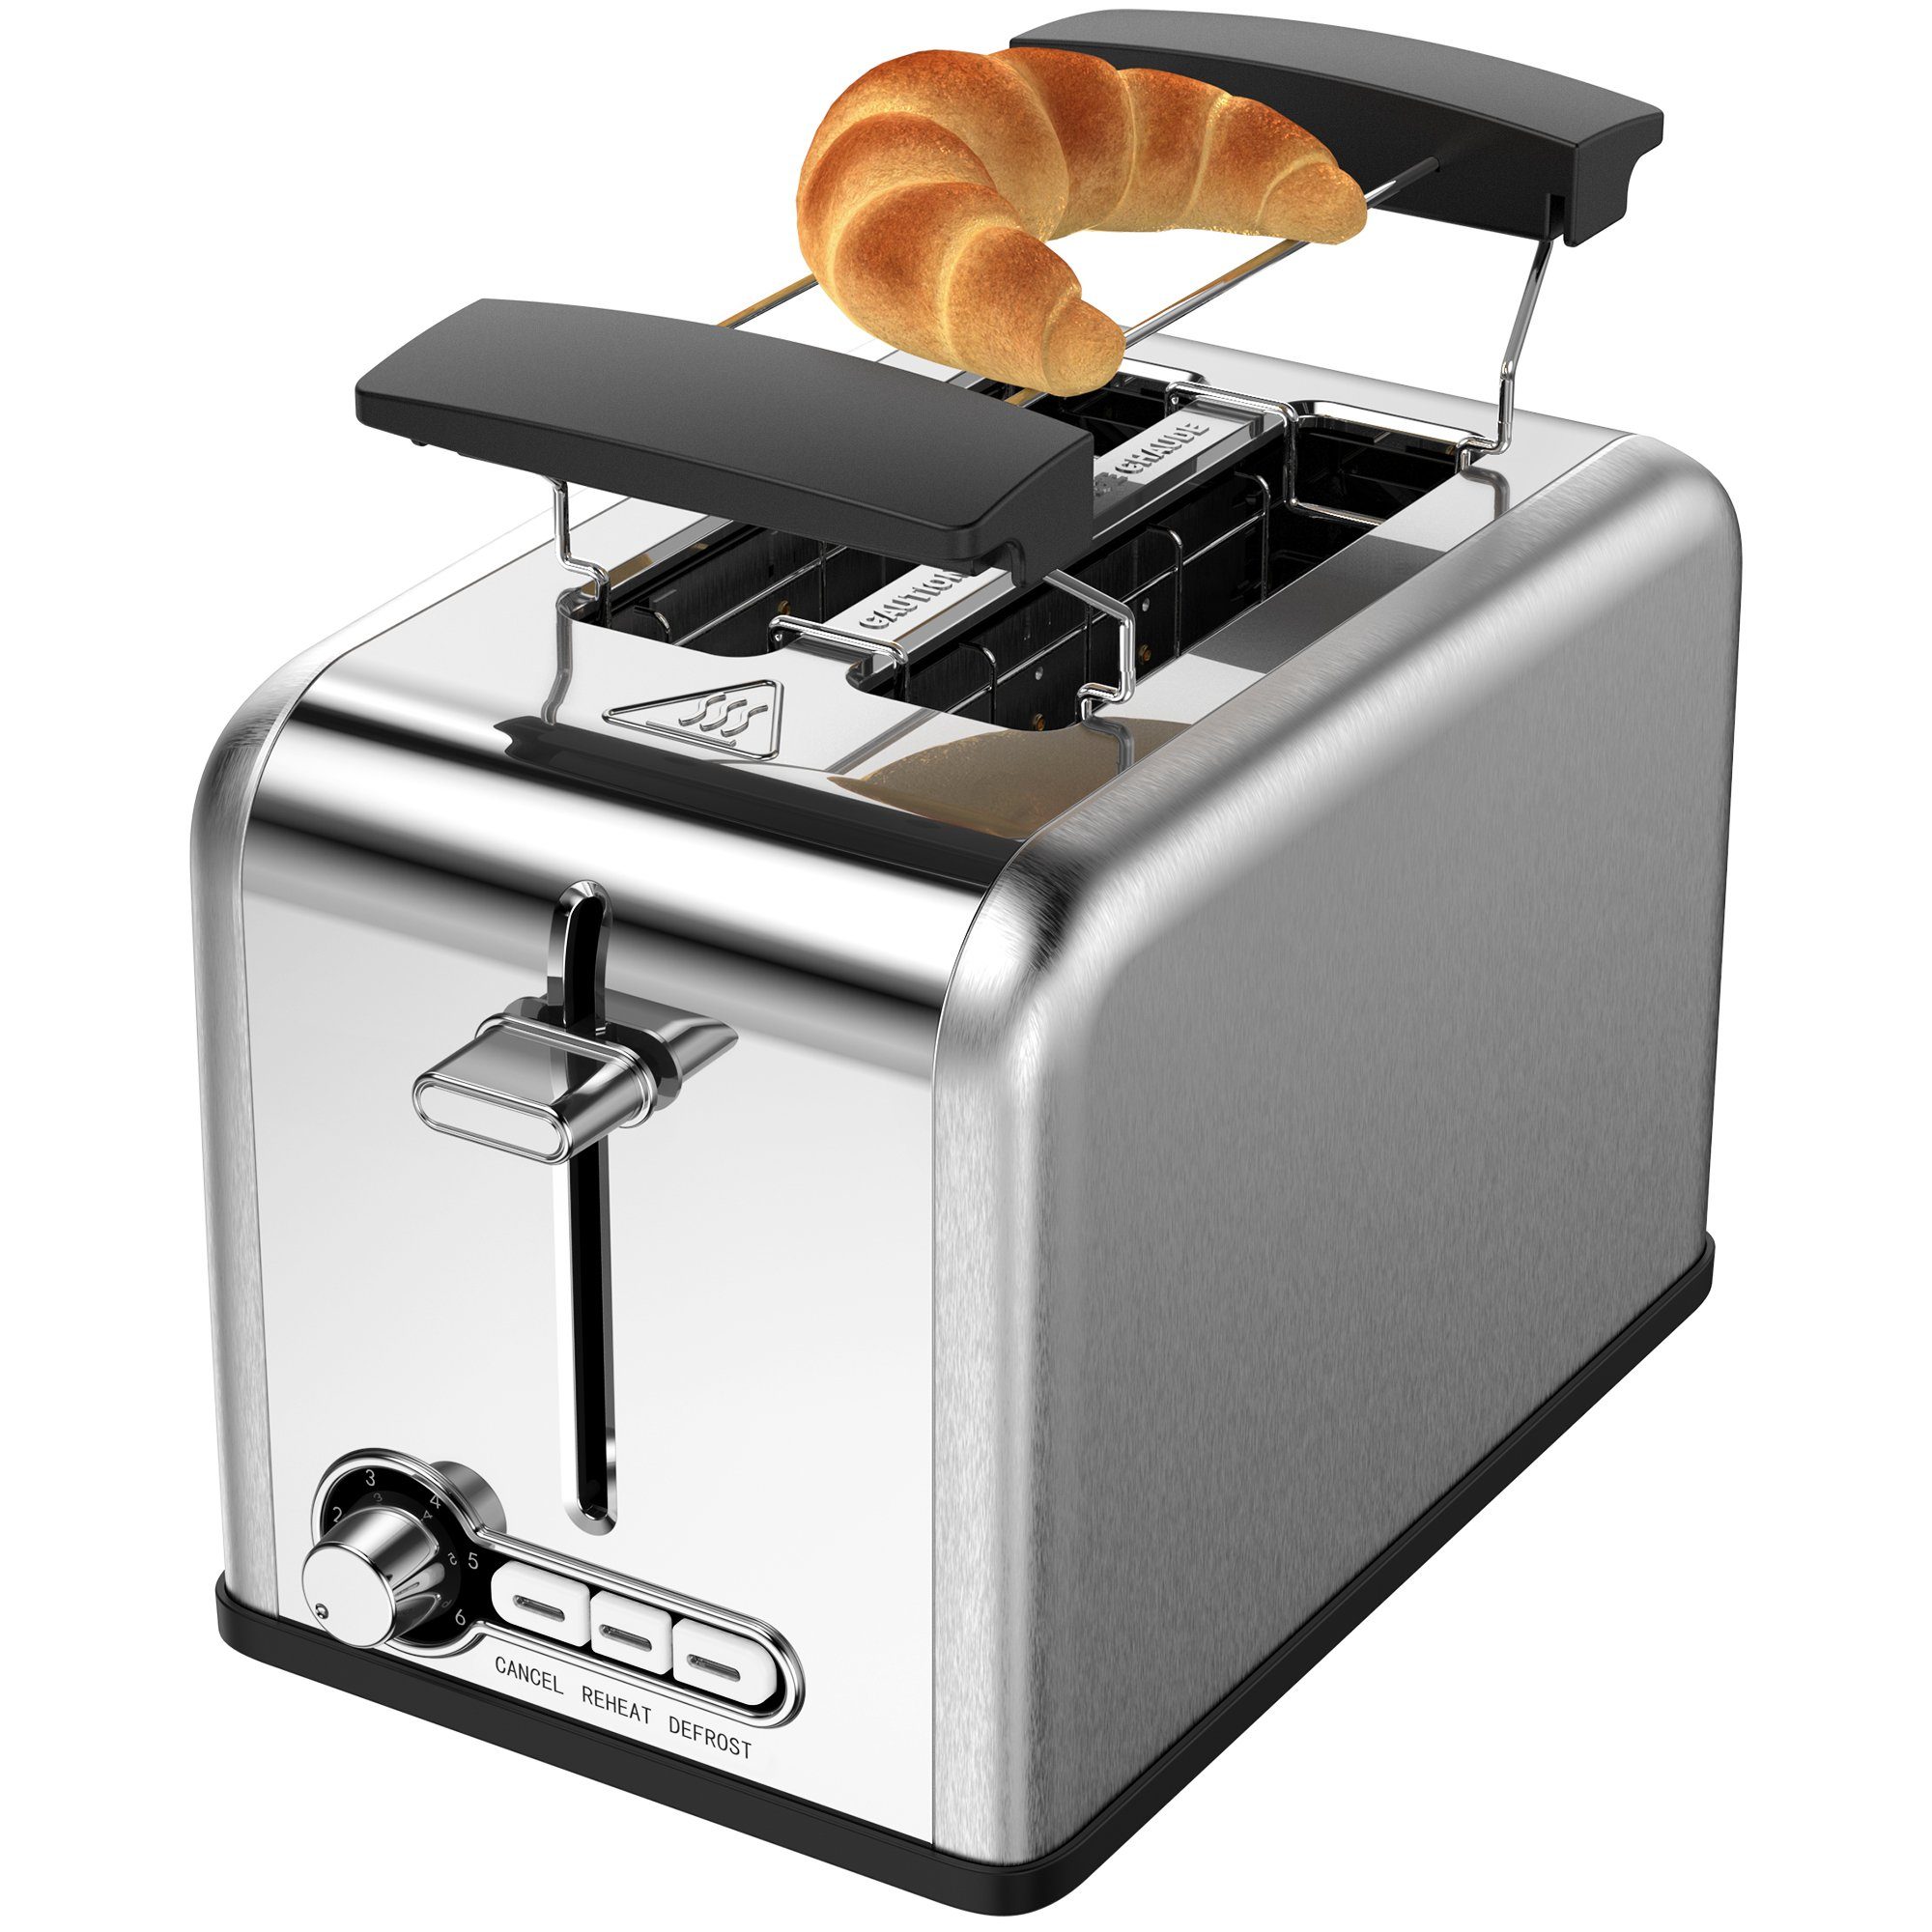 Schlitze, kurze Scheiben, Toaster Toaster, Mutoy 2 825,00 2 Schlitze, 825 W, mit W 2 für Brötchenaufsatz, kurze